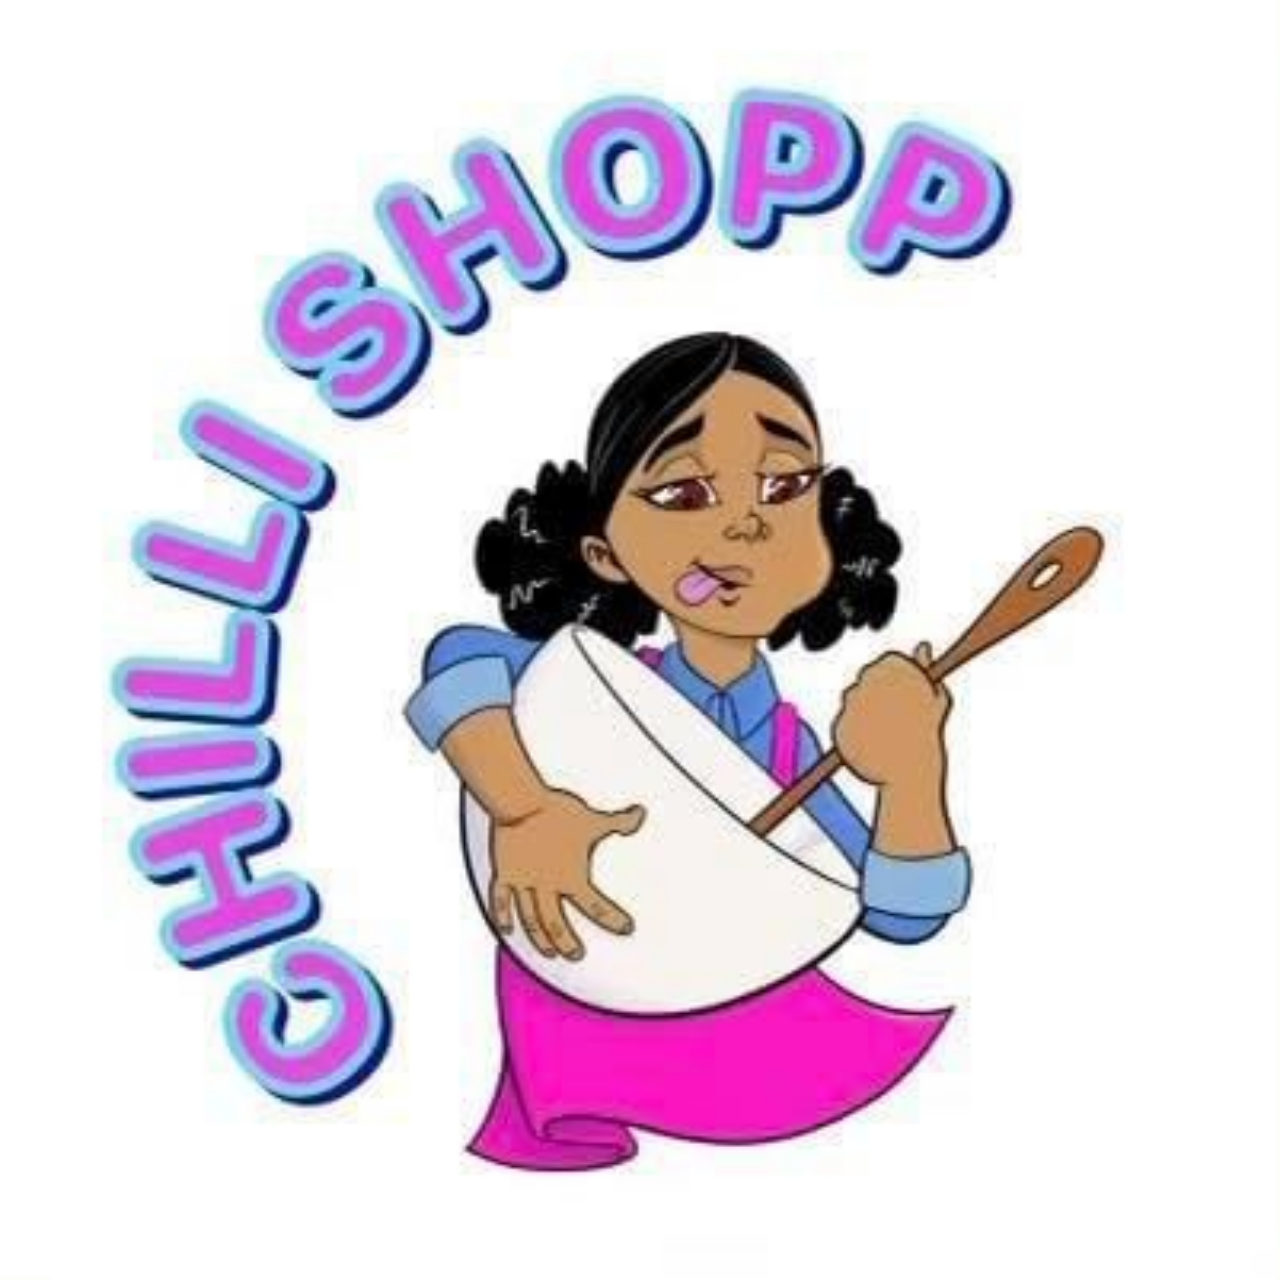 chilishopp's logo